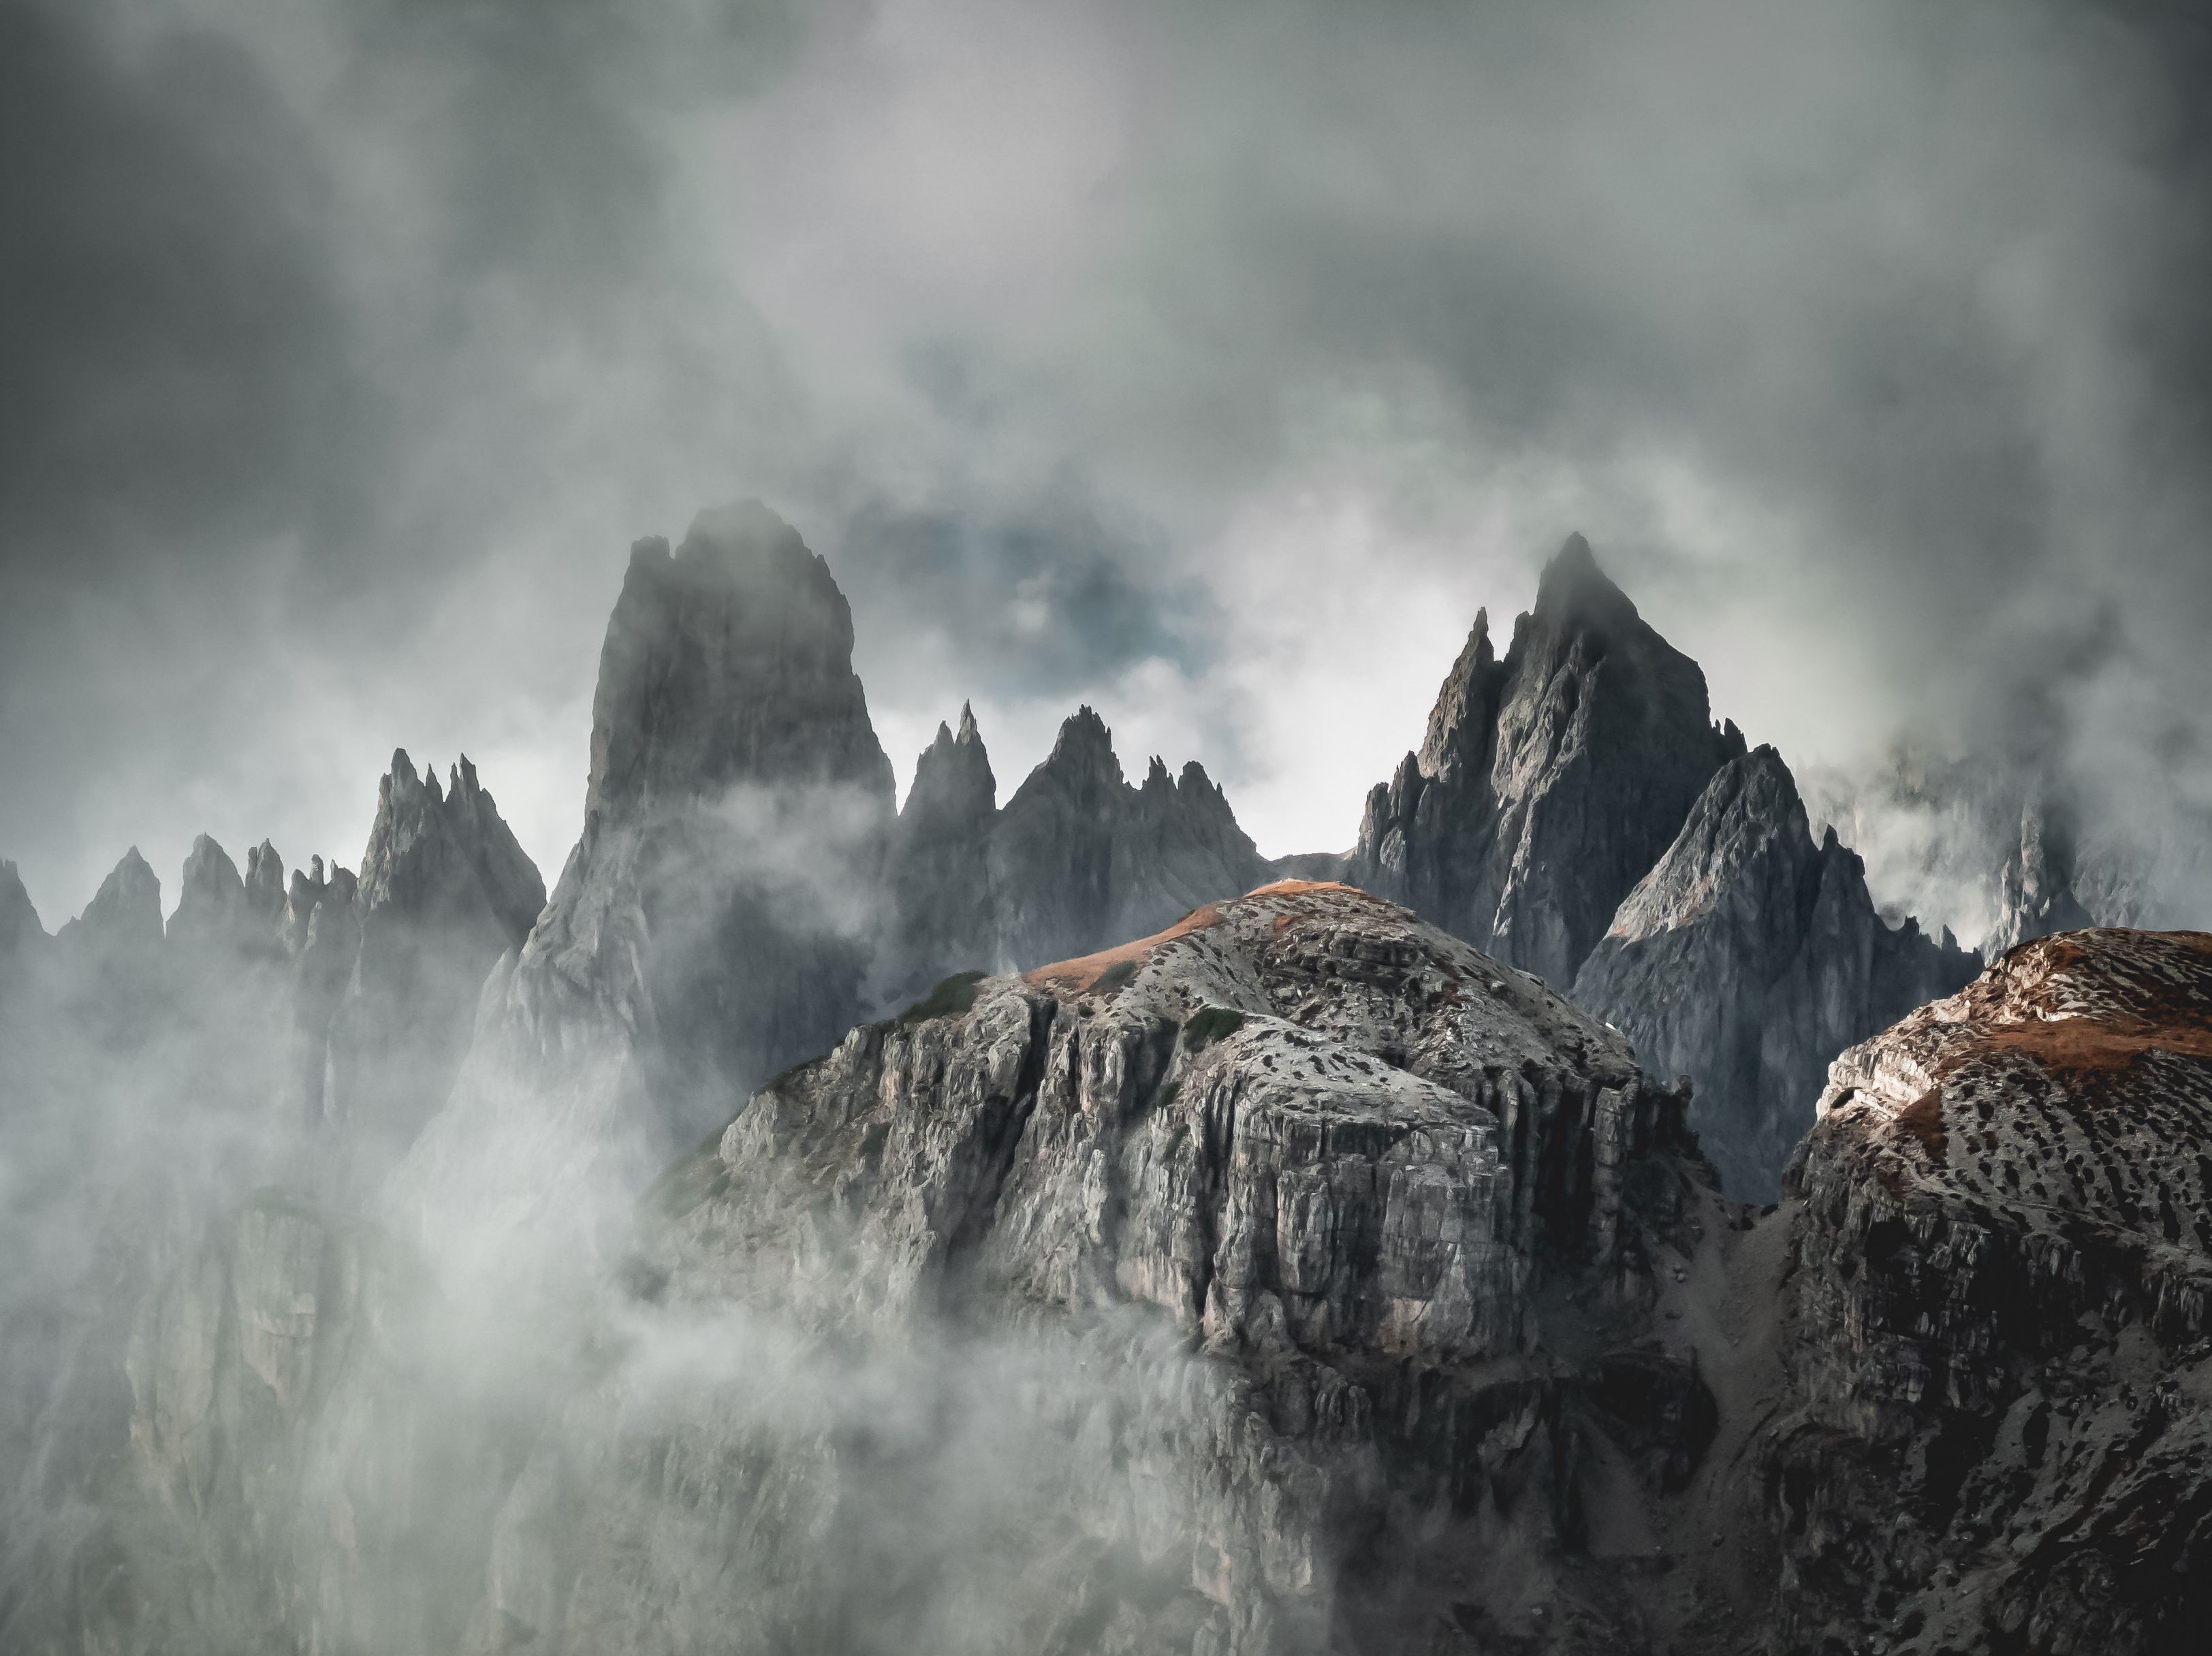 Uma foto nas Dolomitas de uma cadeia de montanhas envolta em névoa, num visual bem misterioso.